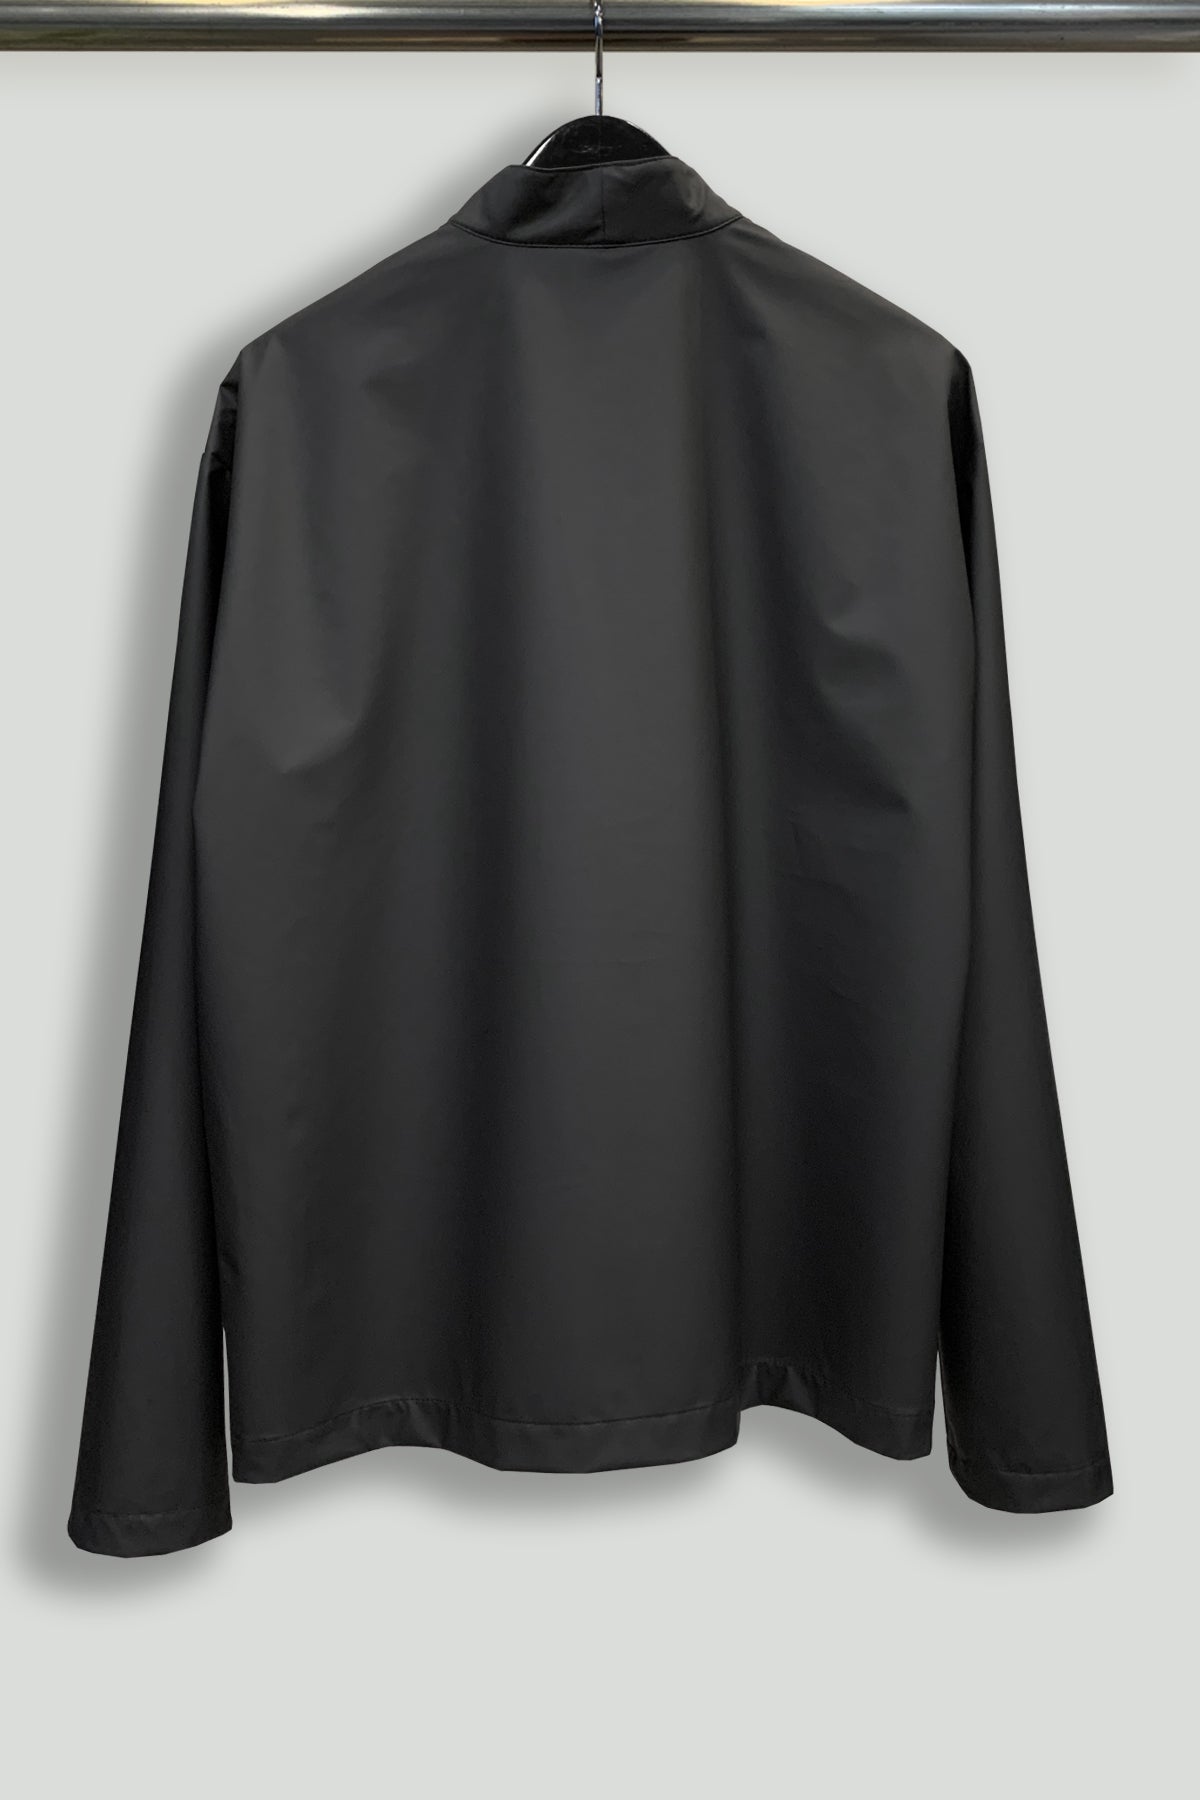 Matte Rainwear ALI Jacket-Hanger Back